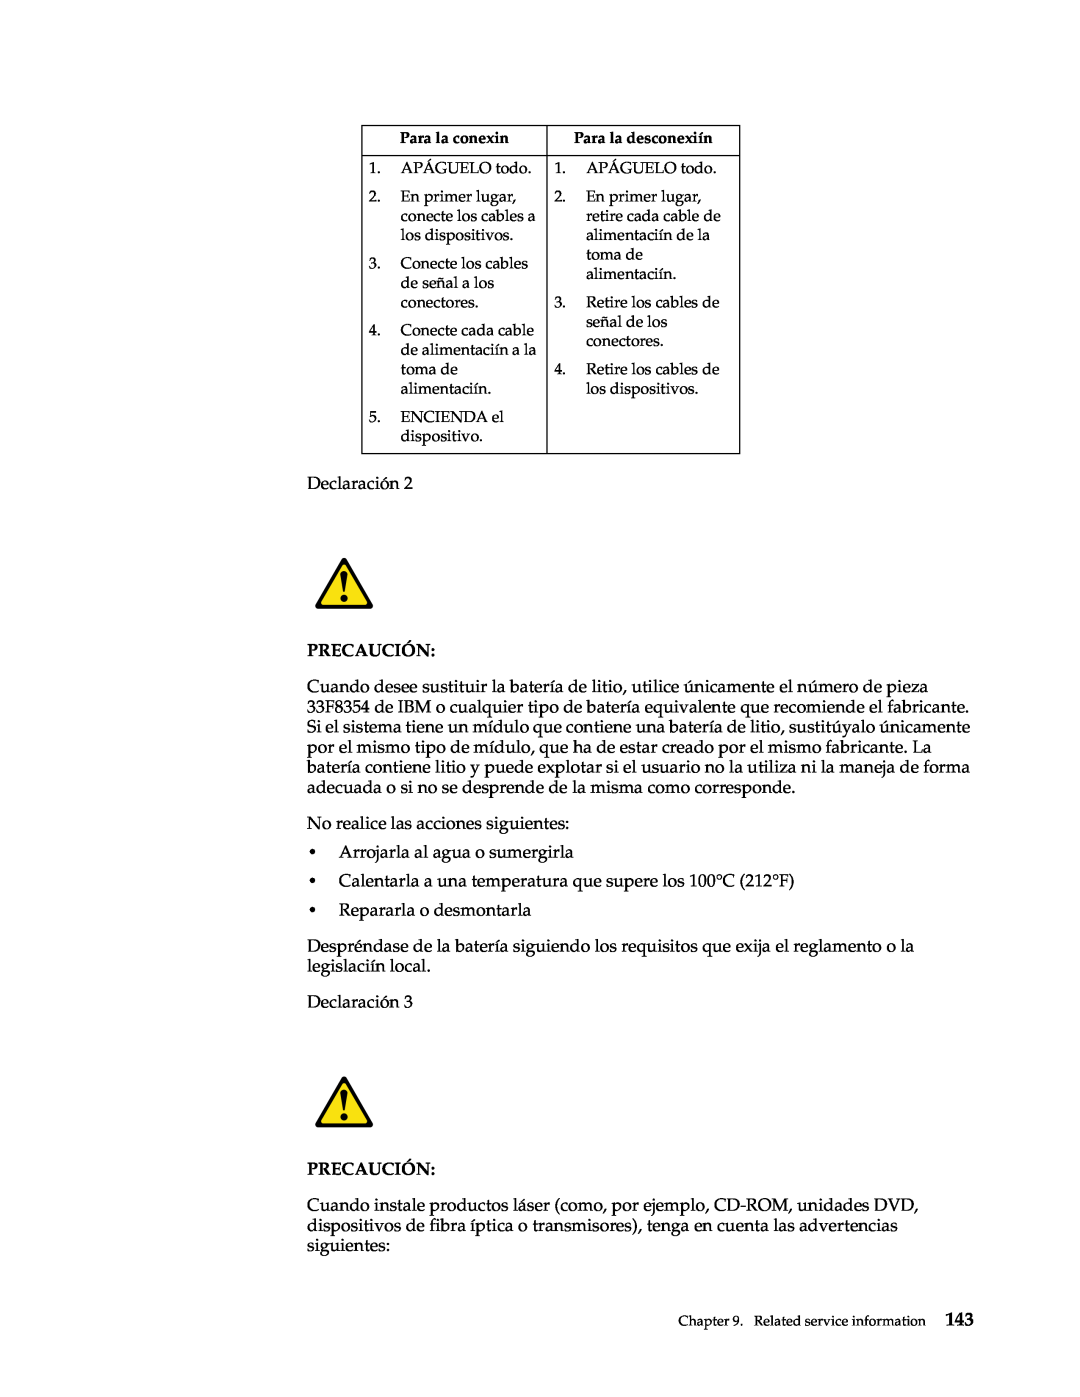 IBM xSeries 330 manual Declaración, Precaución 